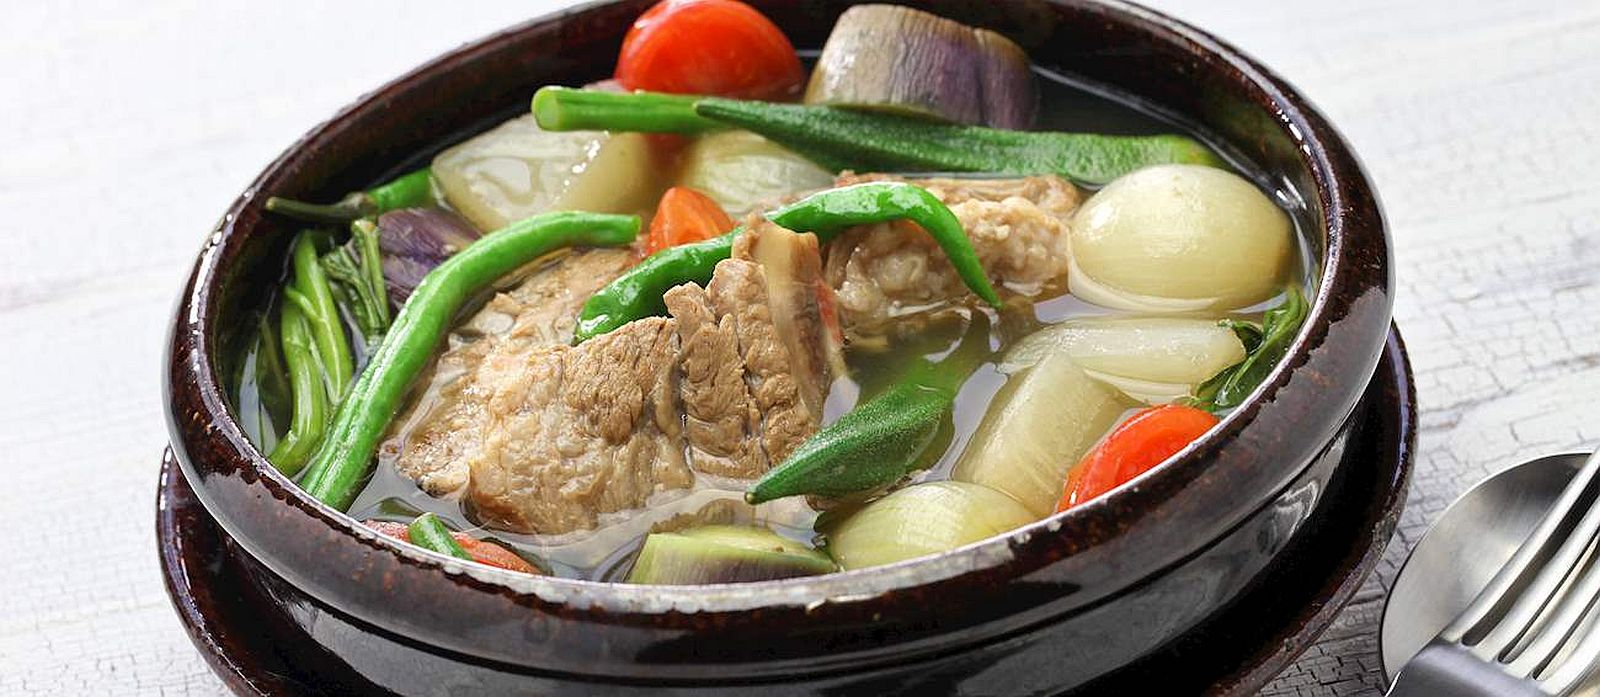 PHILIPPINEN REISEN im PHILIPPINEN MAGAZIN - Leitfaden zu philippinischen Suppen